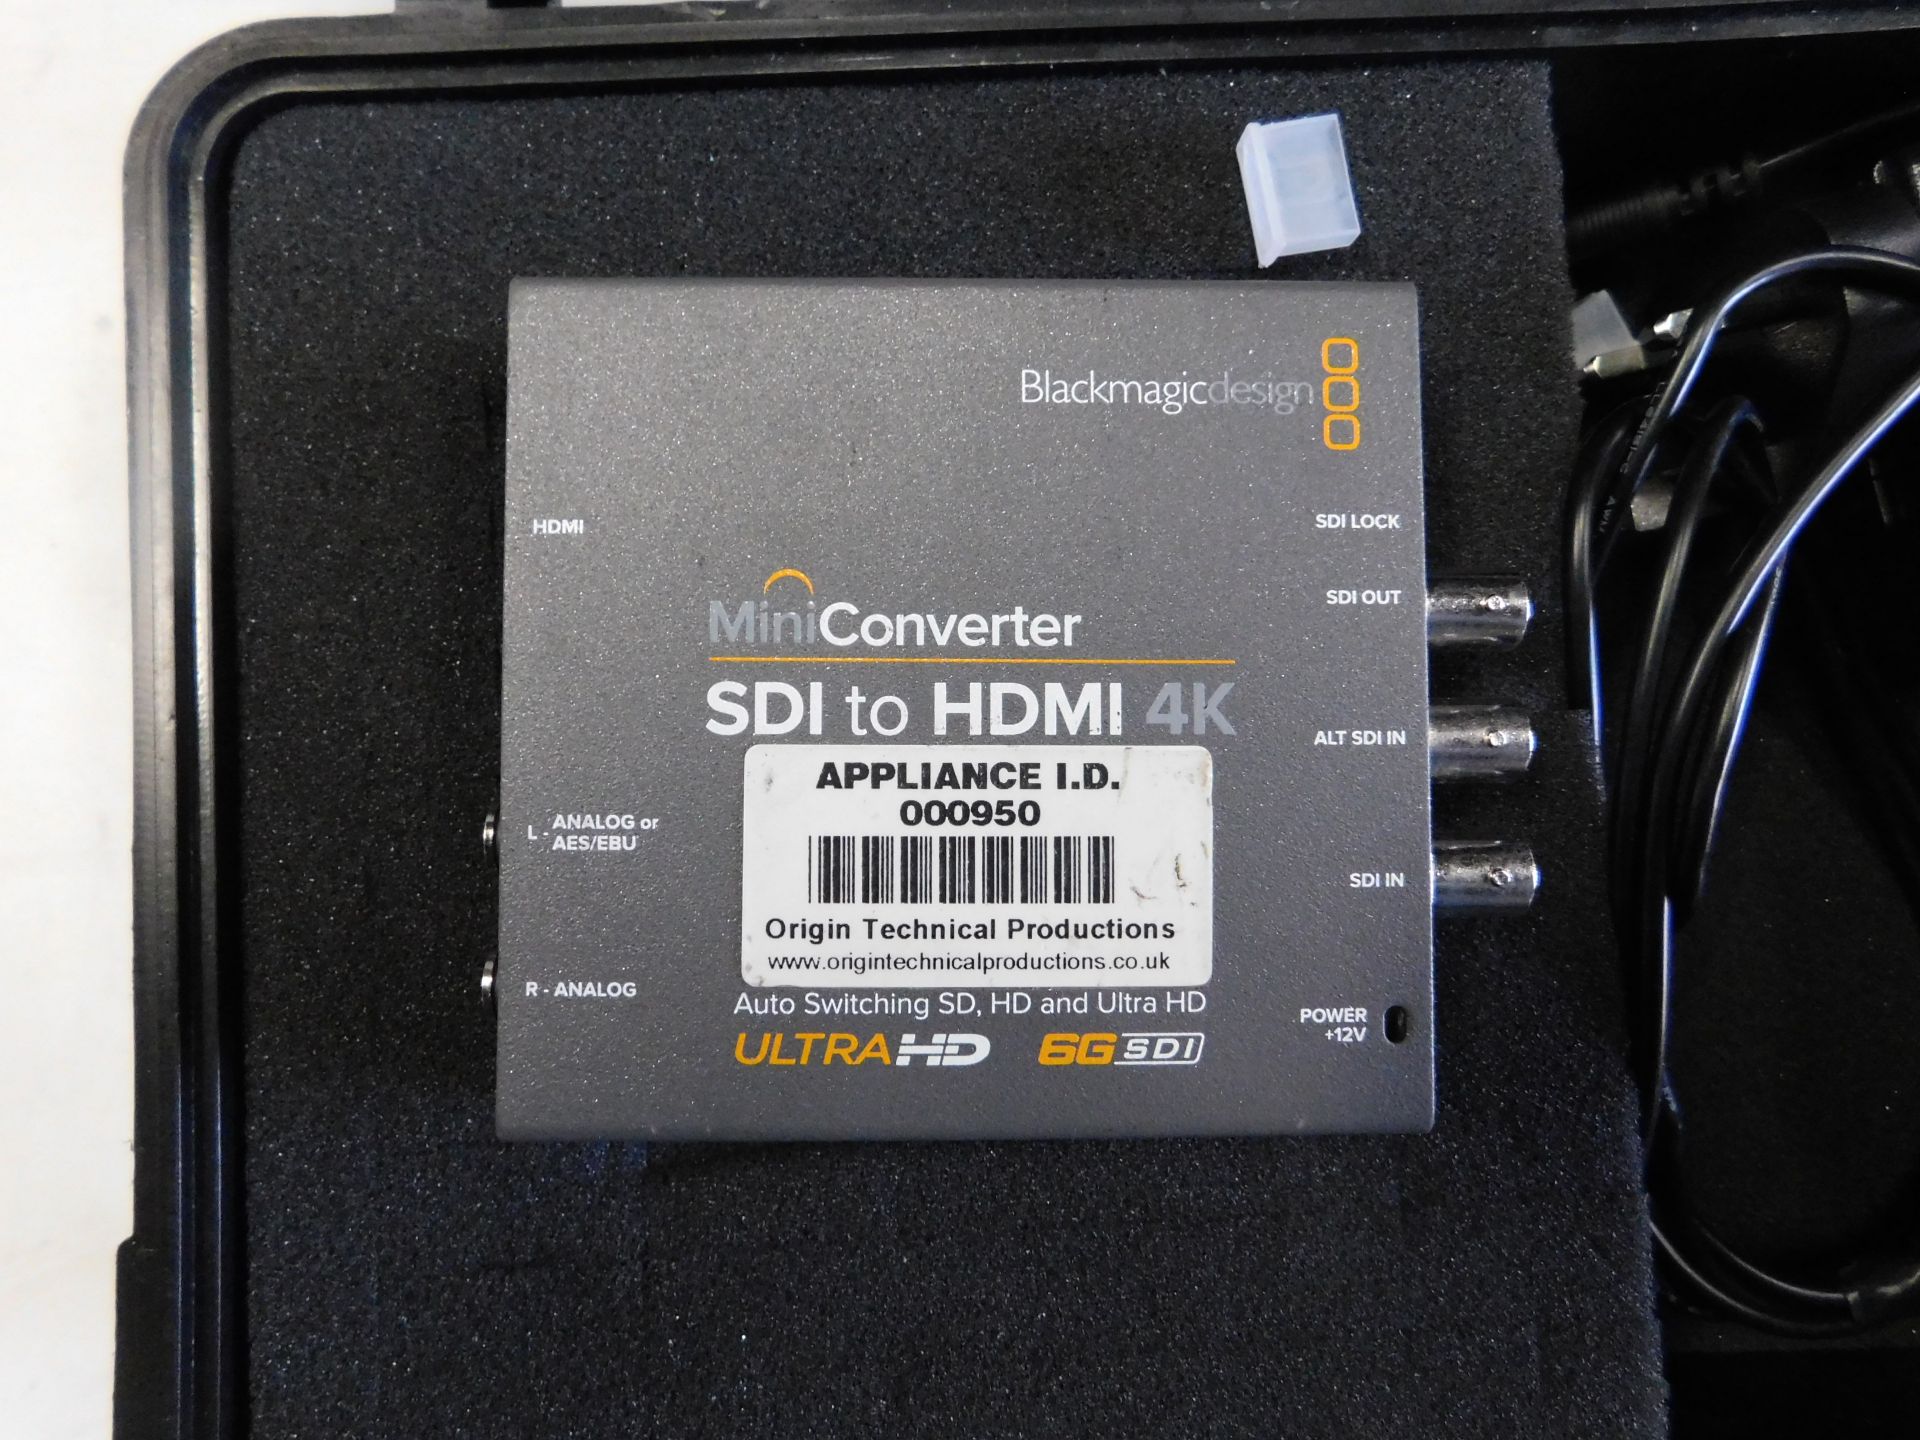 2 BlackMagicDesign Mini Converter SDI to HDMI Kits & 2 BlackMagicDesign Mini Converter HDMI TO SDI - Image 3 of 10